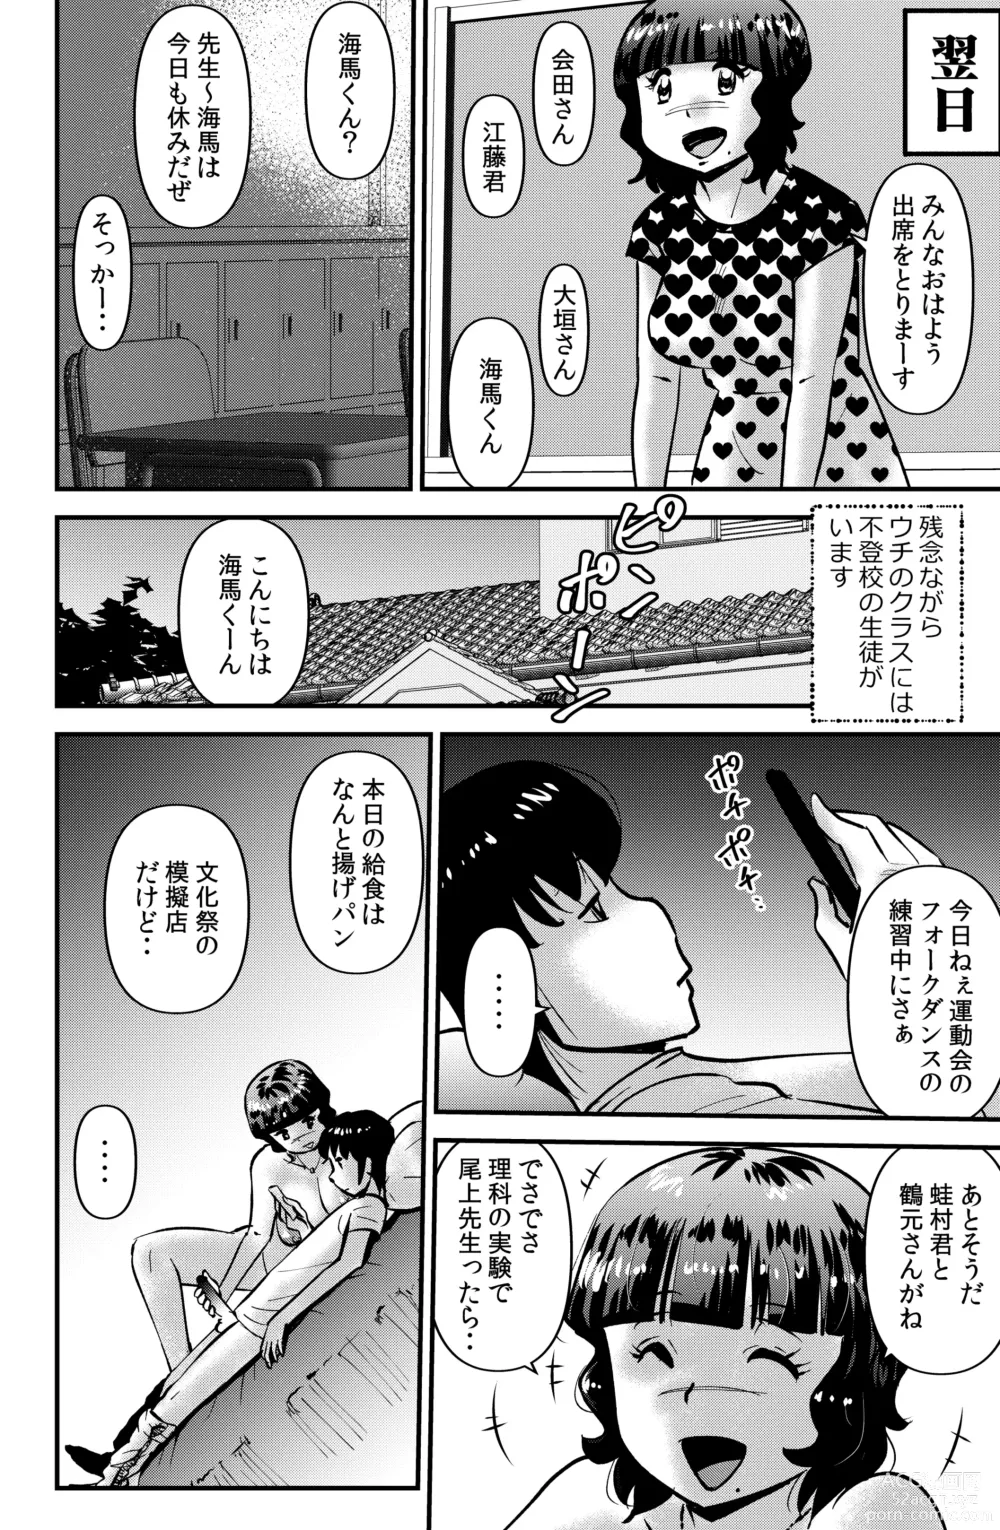 Page 4 of doujinshi Souda! Sensei de Ikou.